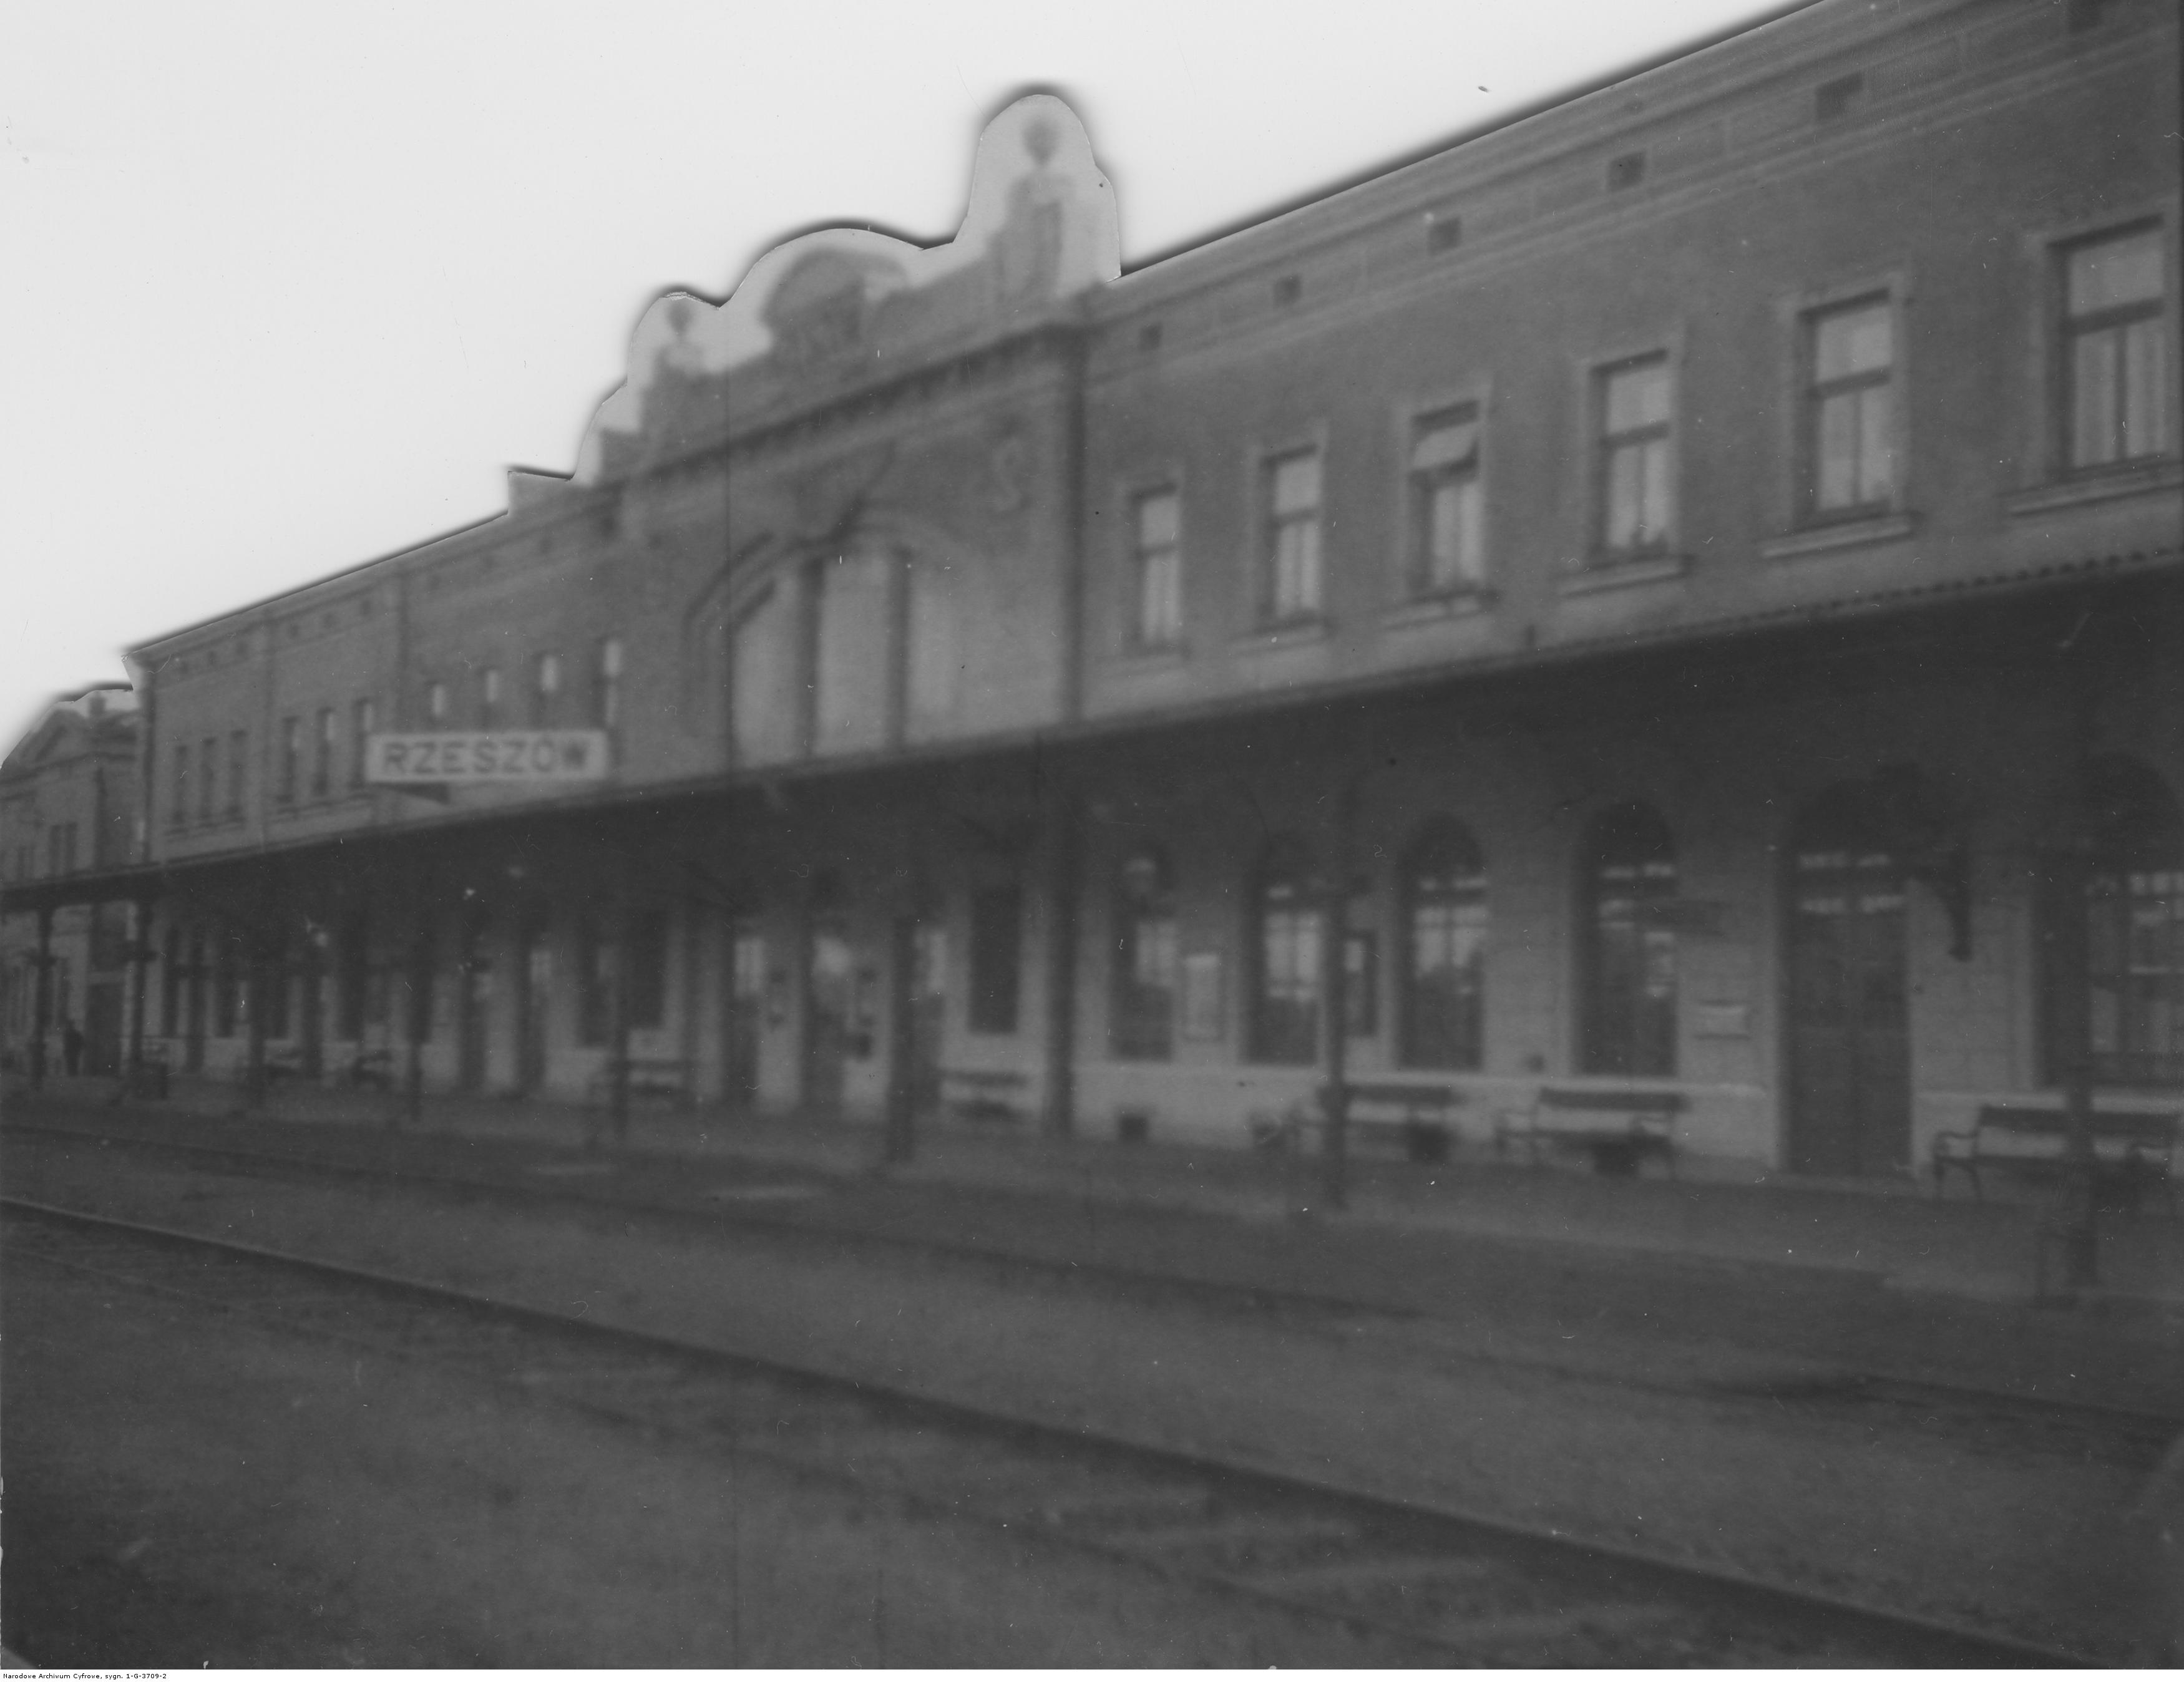 Dworzec kolejowy w Rzeszowie - widok dworca od strony peronu, rok 1932